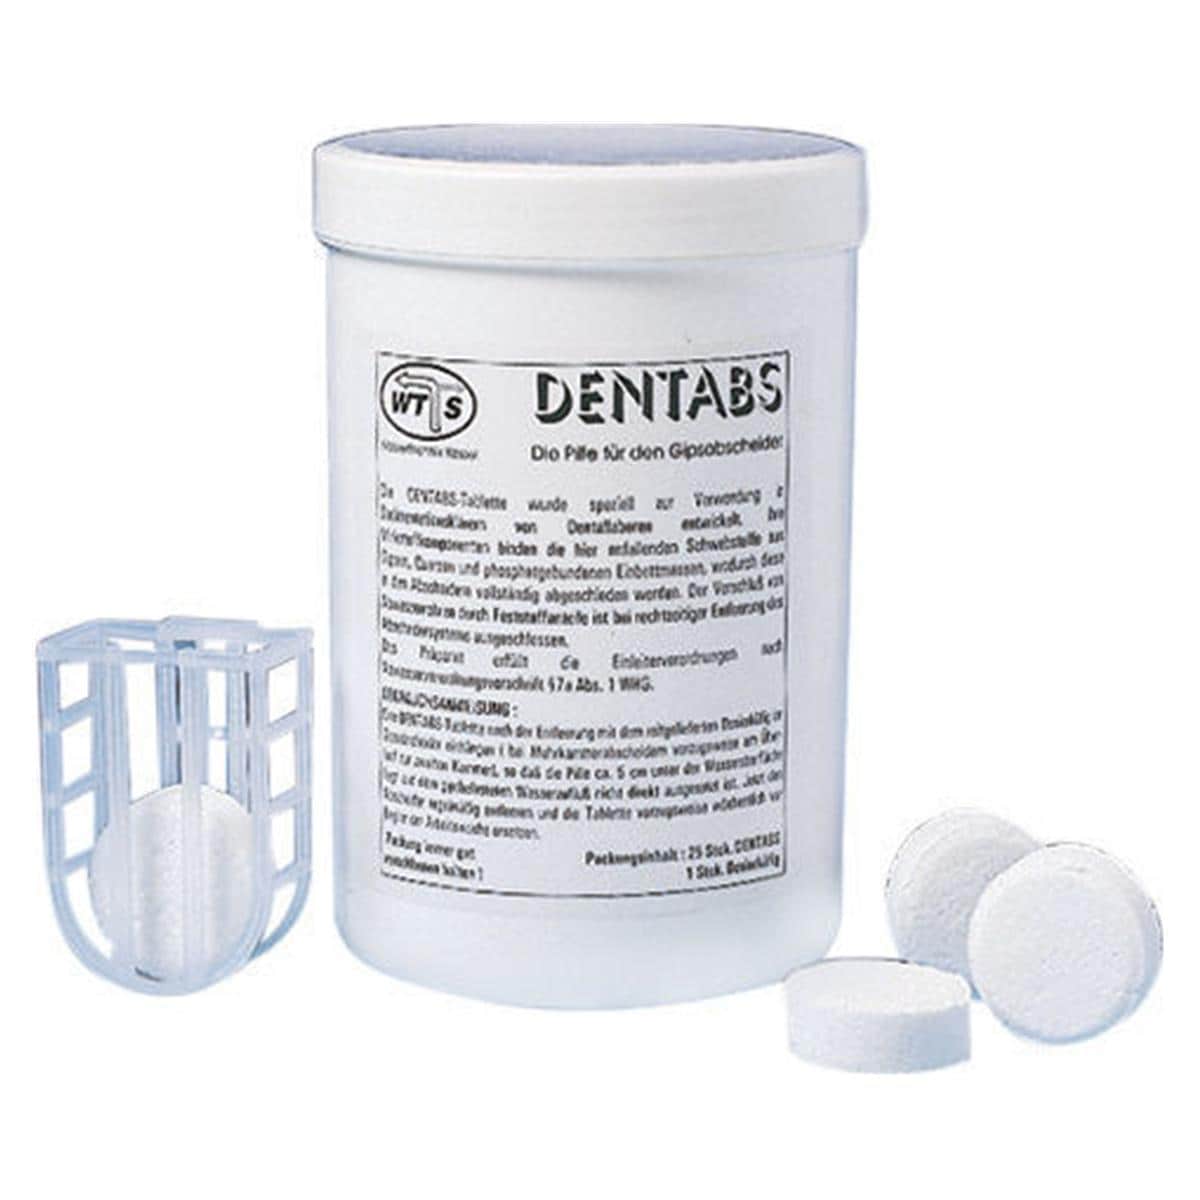 Dentabs - Packung 8 Stück und 1 Einhängekorb